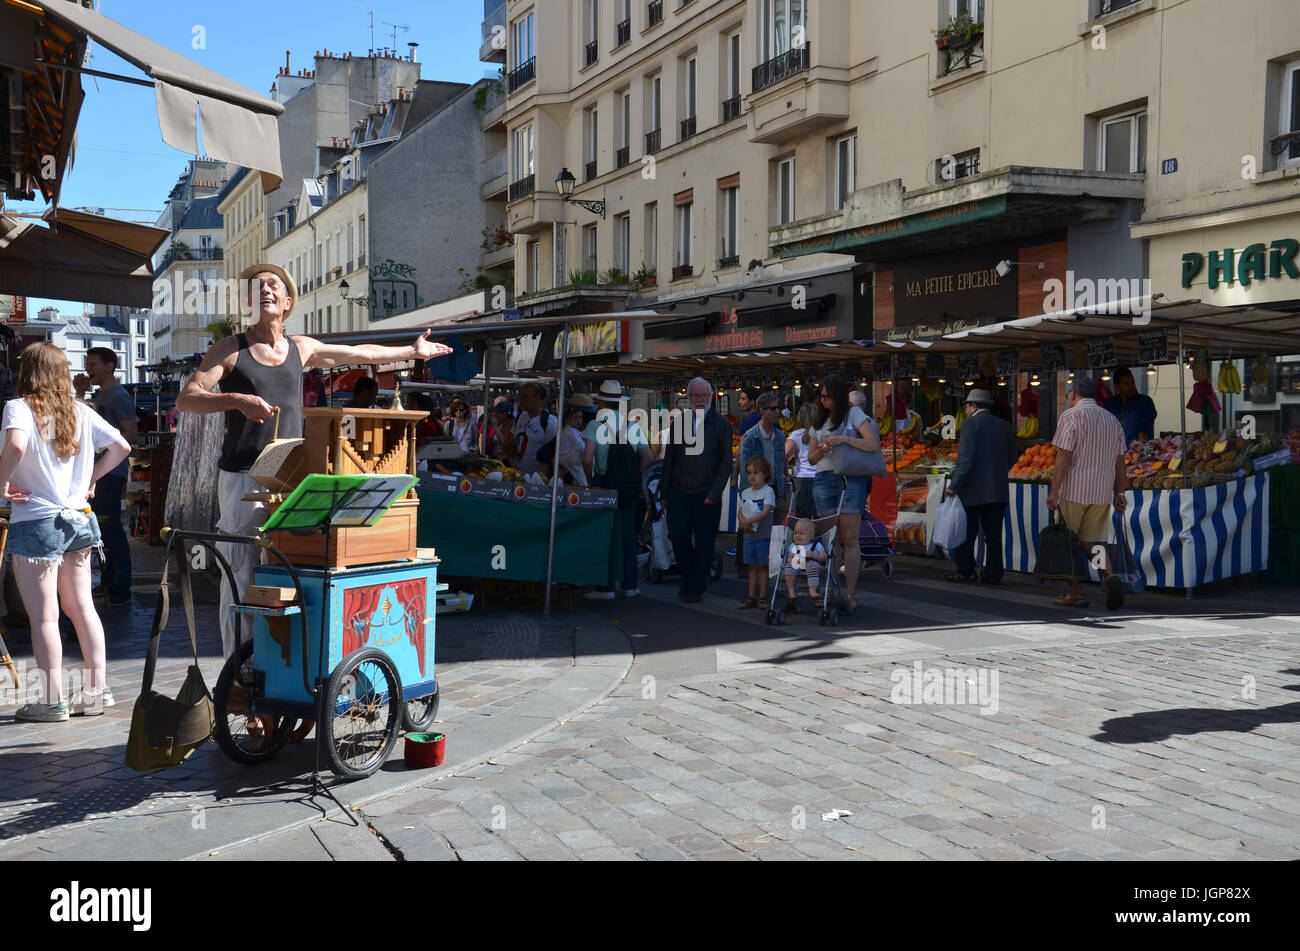 PARIS - 7 août : une rue organiste joue un orgue mécanique à la Marche d'Aligre à Paris, France le 7 août 2016. L'orgue joue des feuilles pliées de Banque D'Images